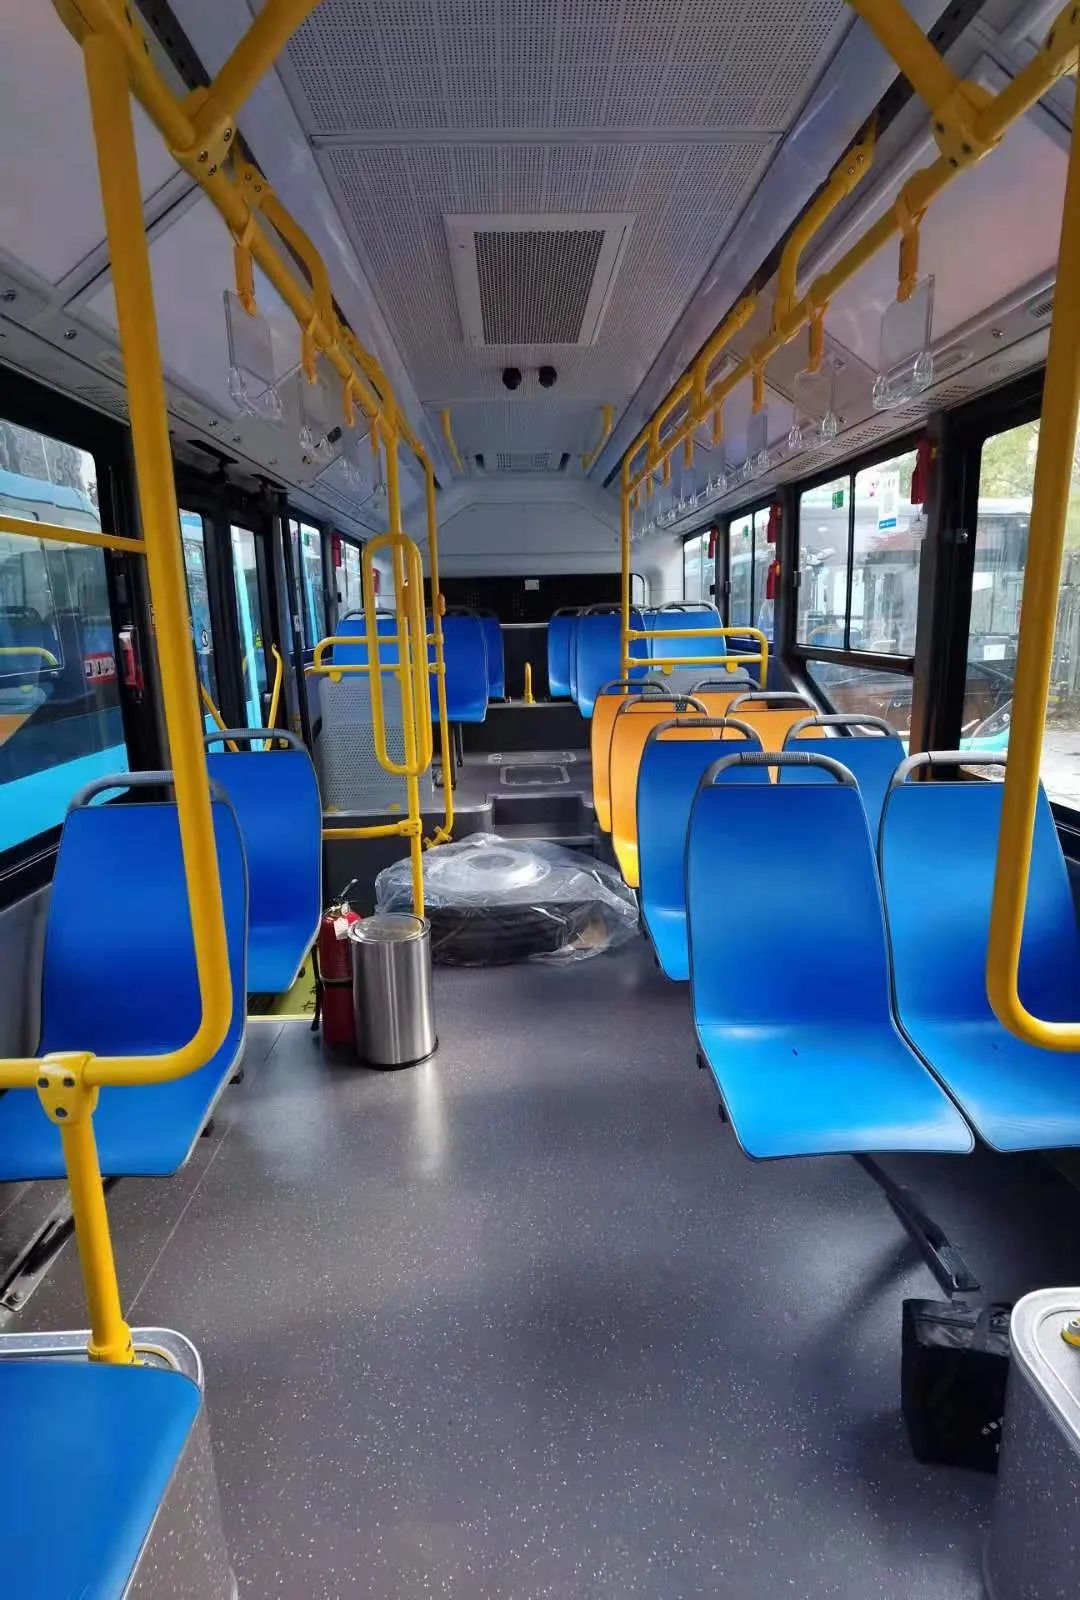 这批通体蔚蓝色的公交车辆,侧面印有禹风鼓韵 榴乡怀远八个红色大字